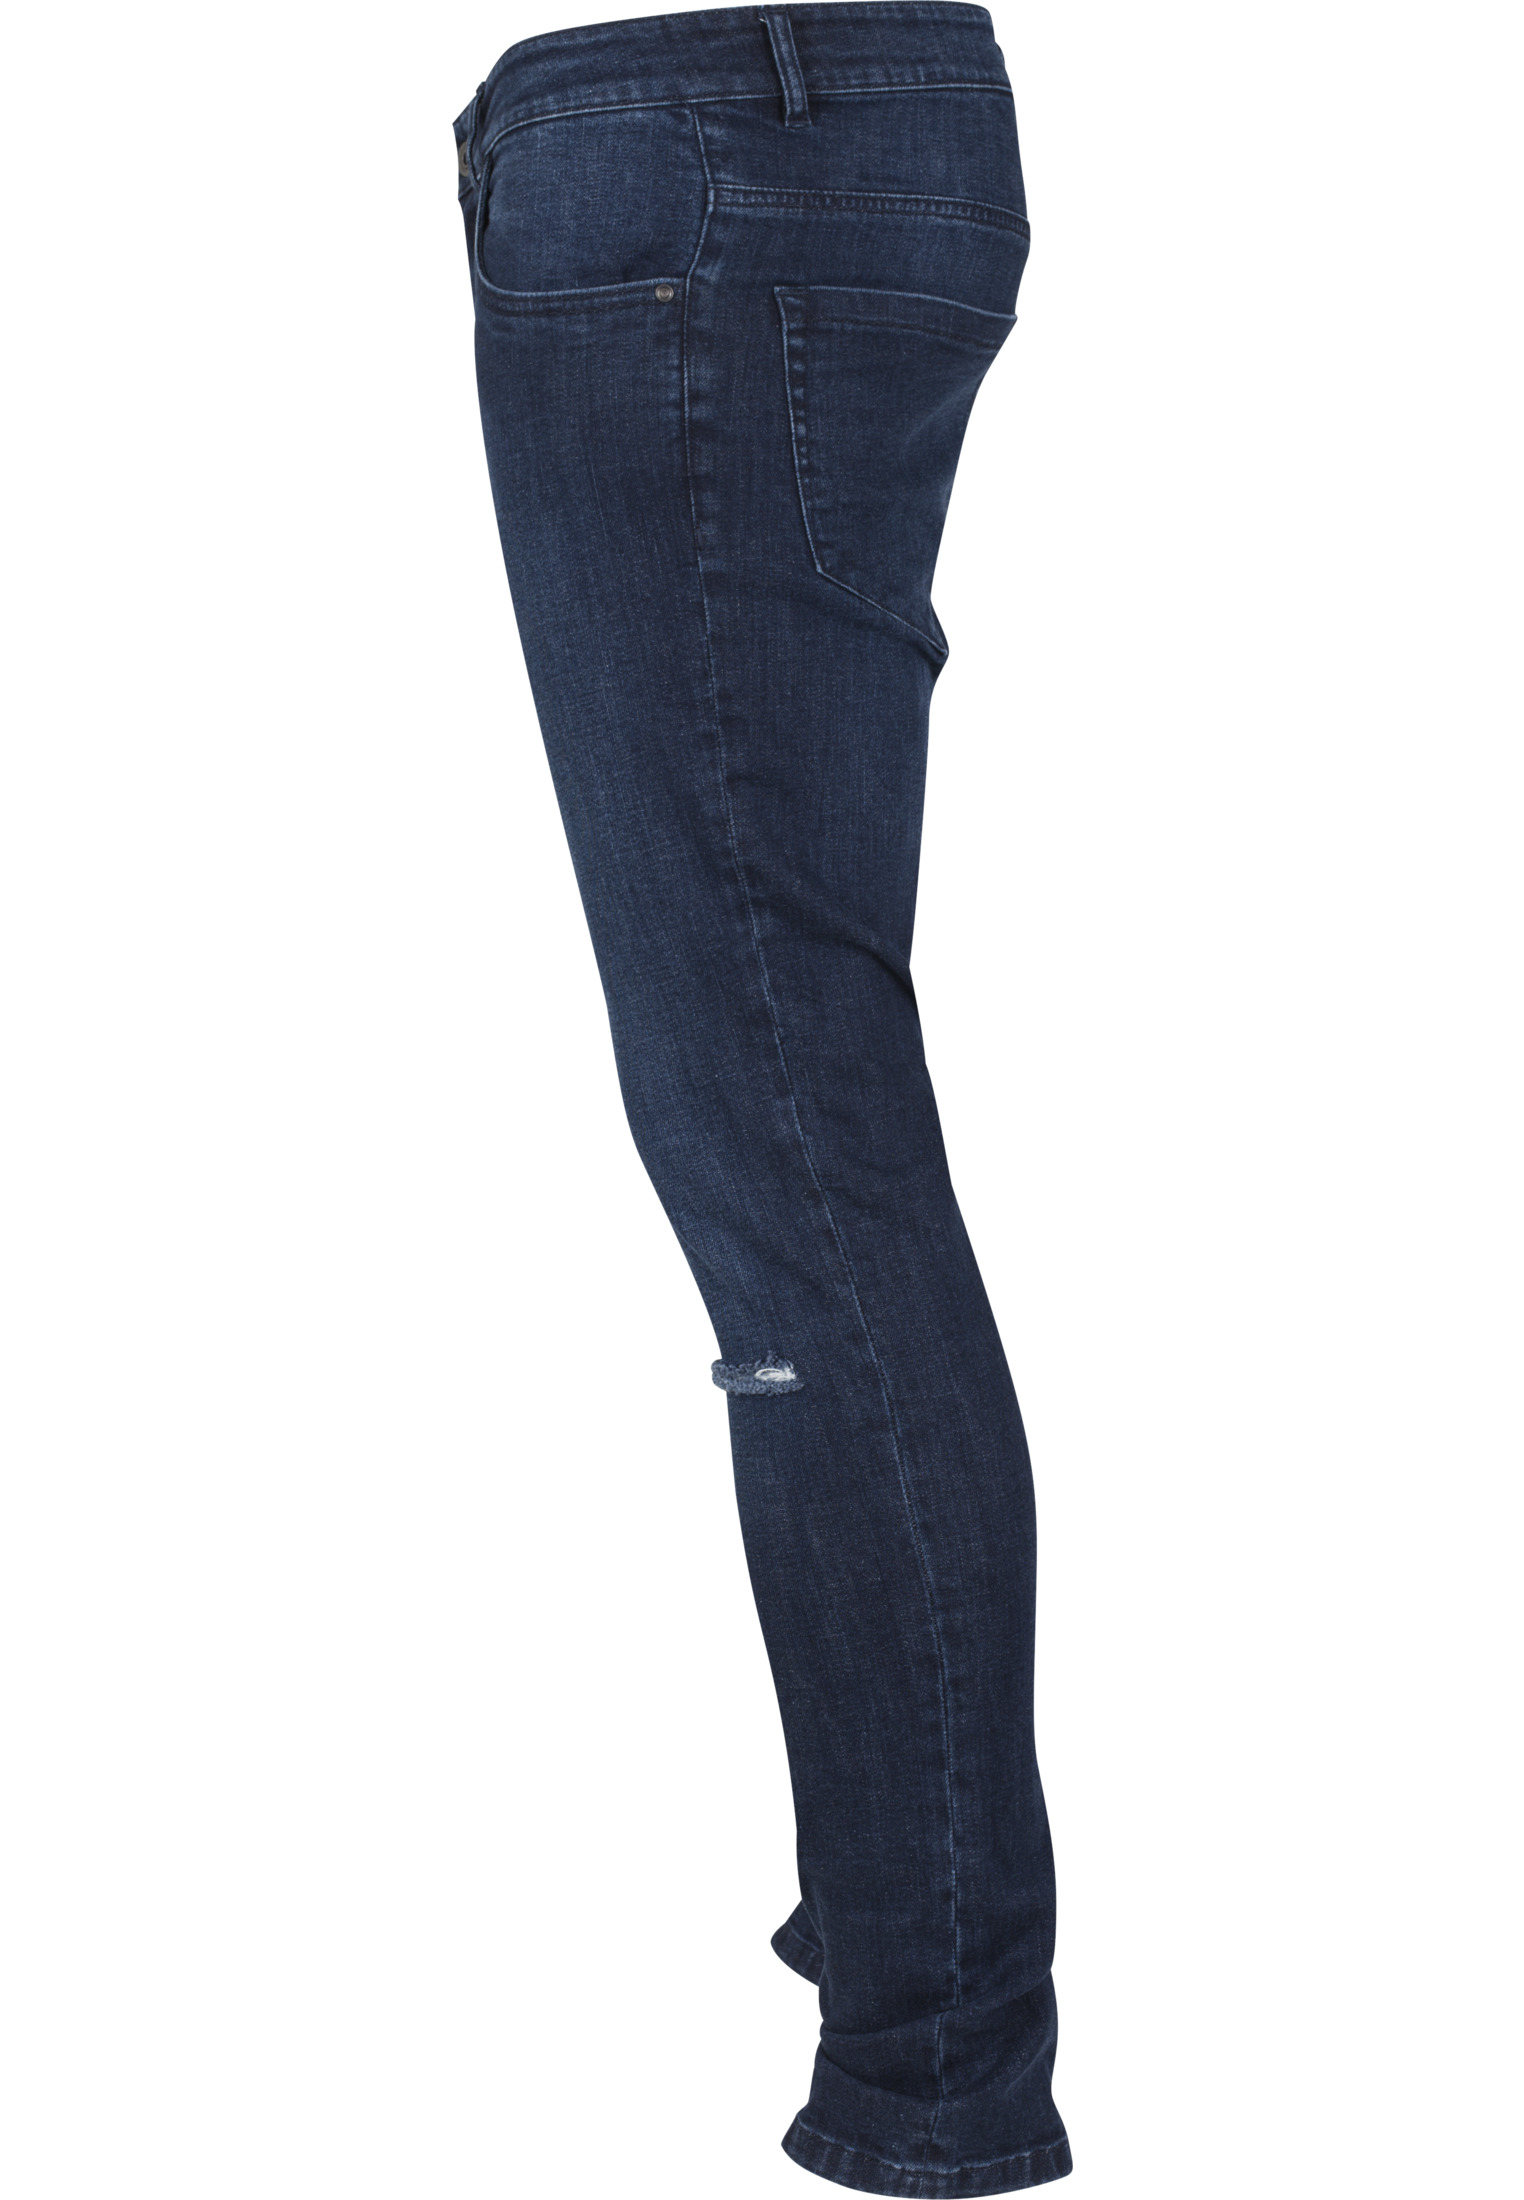 Hosen Slim Fit Knee Cut Denim Pants in Farbe dark blue